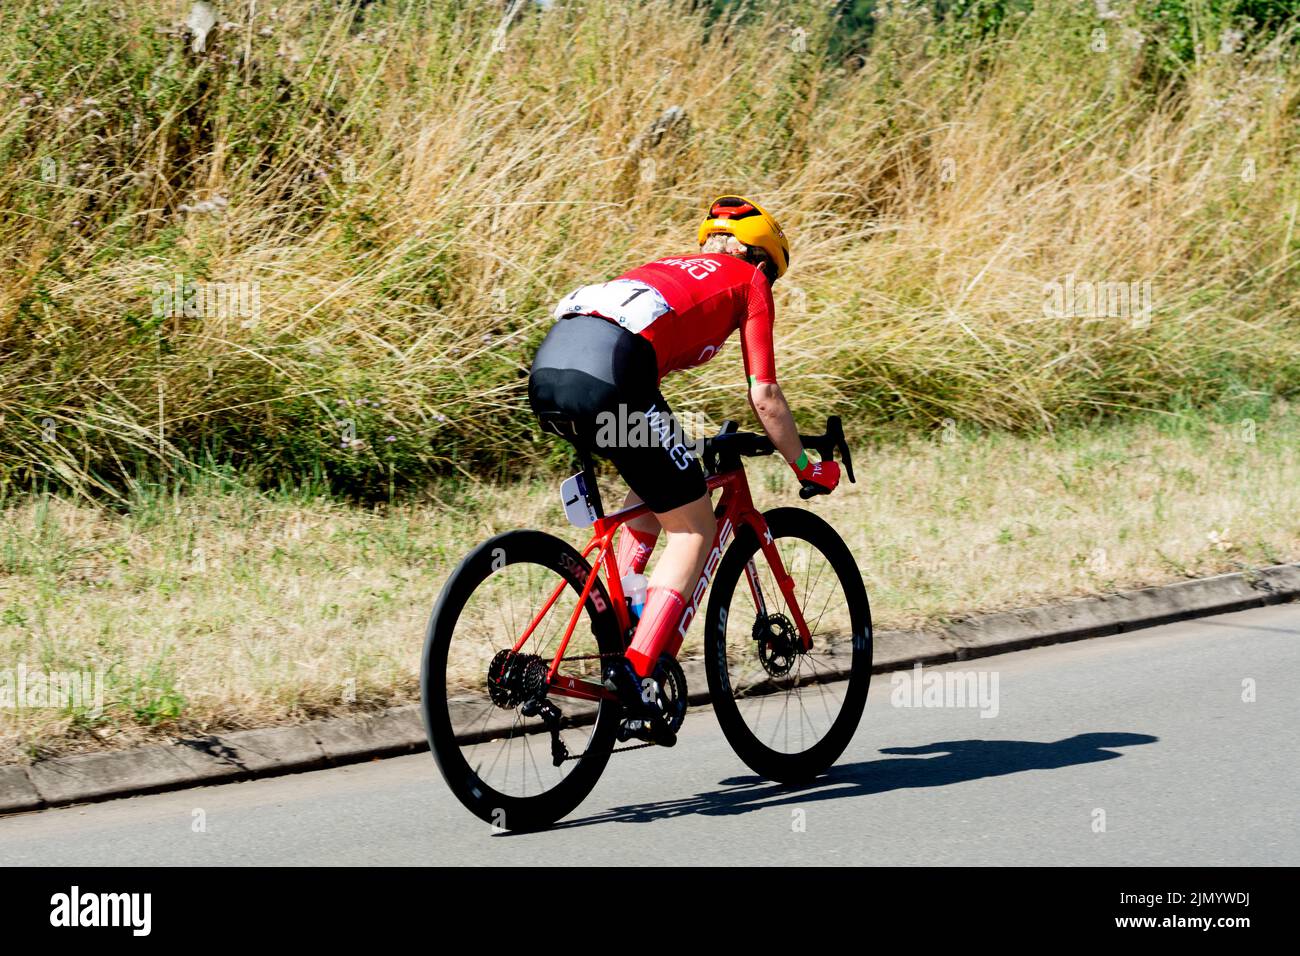 La course cycliste féminine des Jeux du Commonwealth de 2022, Budbrooke, Warwickshire, Royaume-Uni Banque D'Images